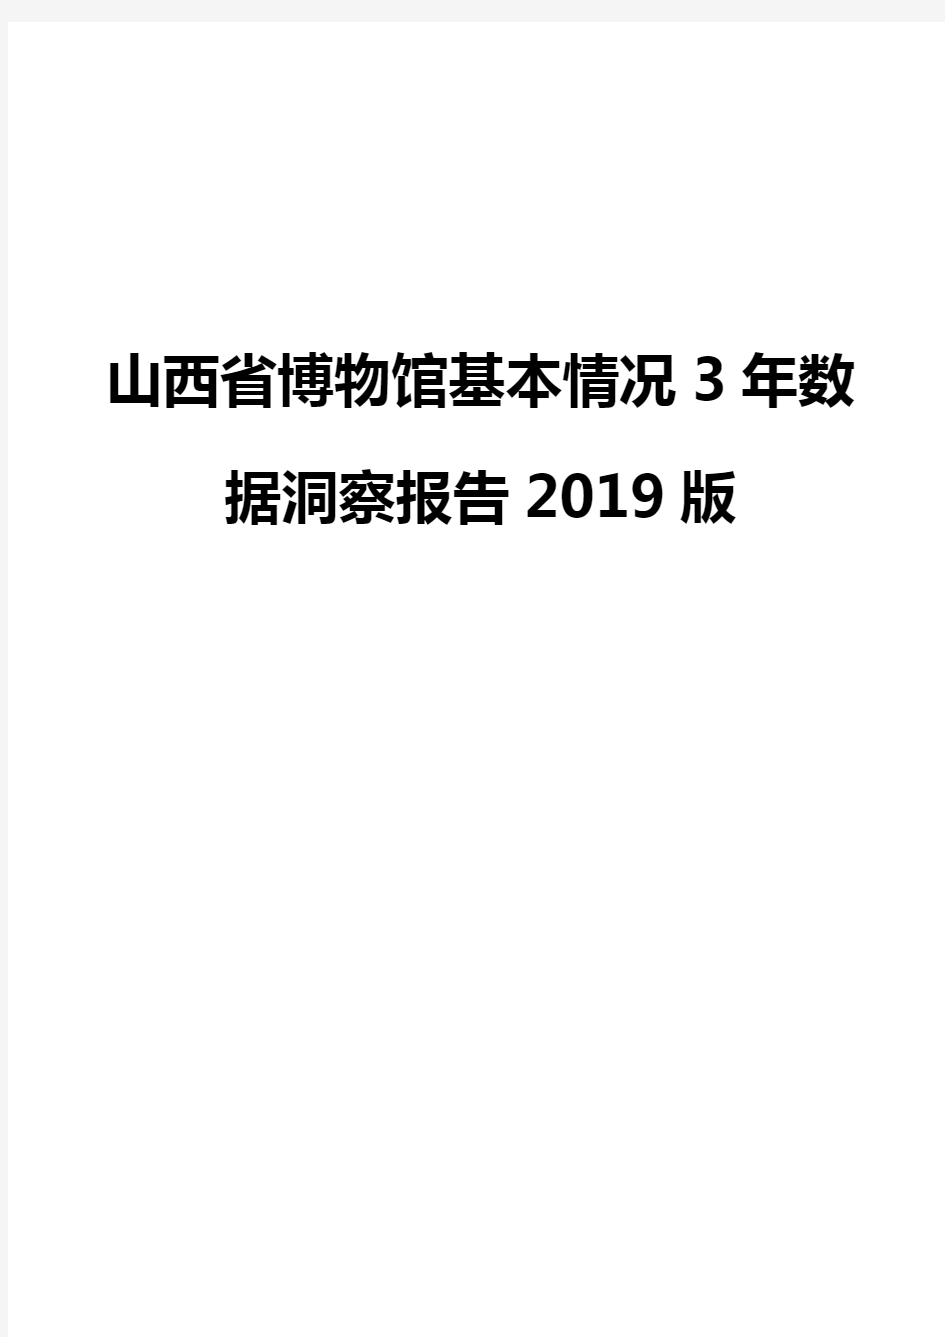 山西省博物馆基本情况3年数据洞察报告2019版